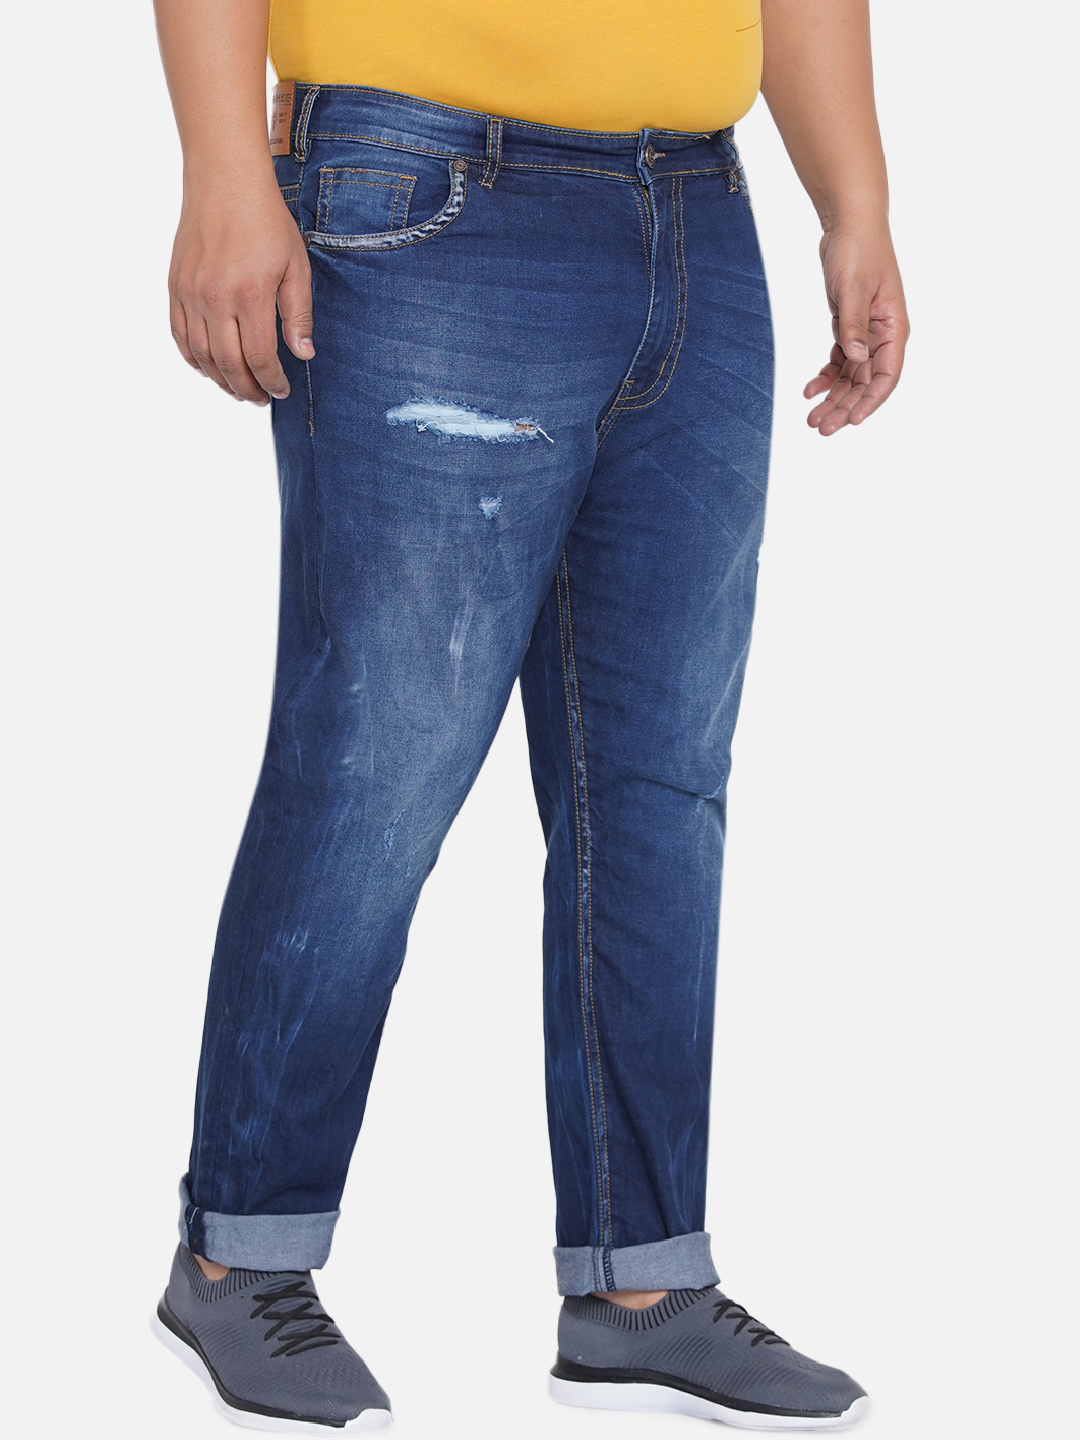 bottomwear/jeans/JPJ12202/jpj12202-3.jpg